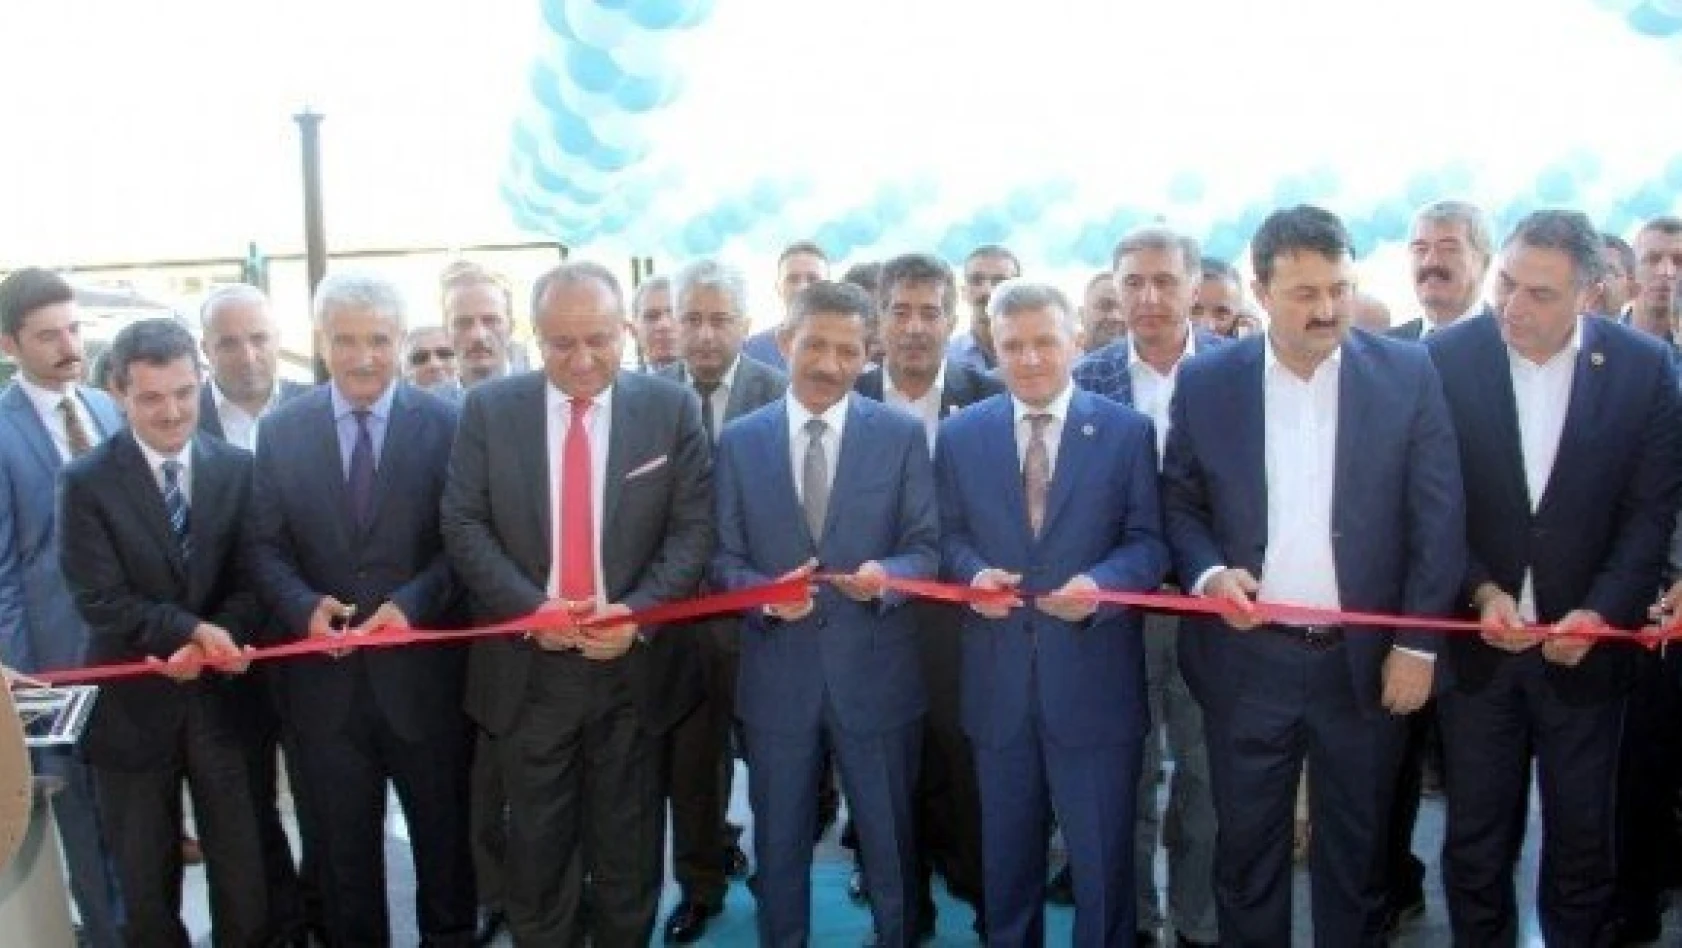 İŞGEM binası törenle hizmete açıldı